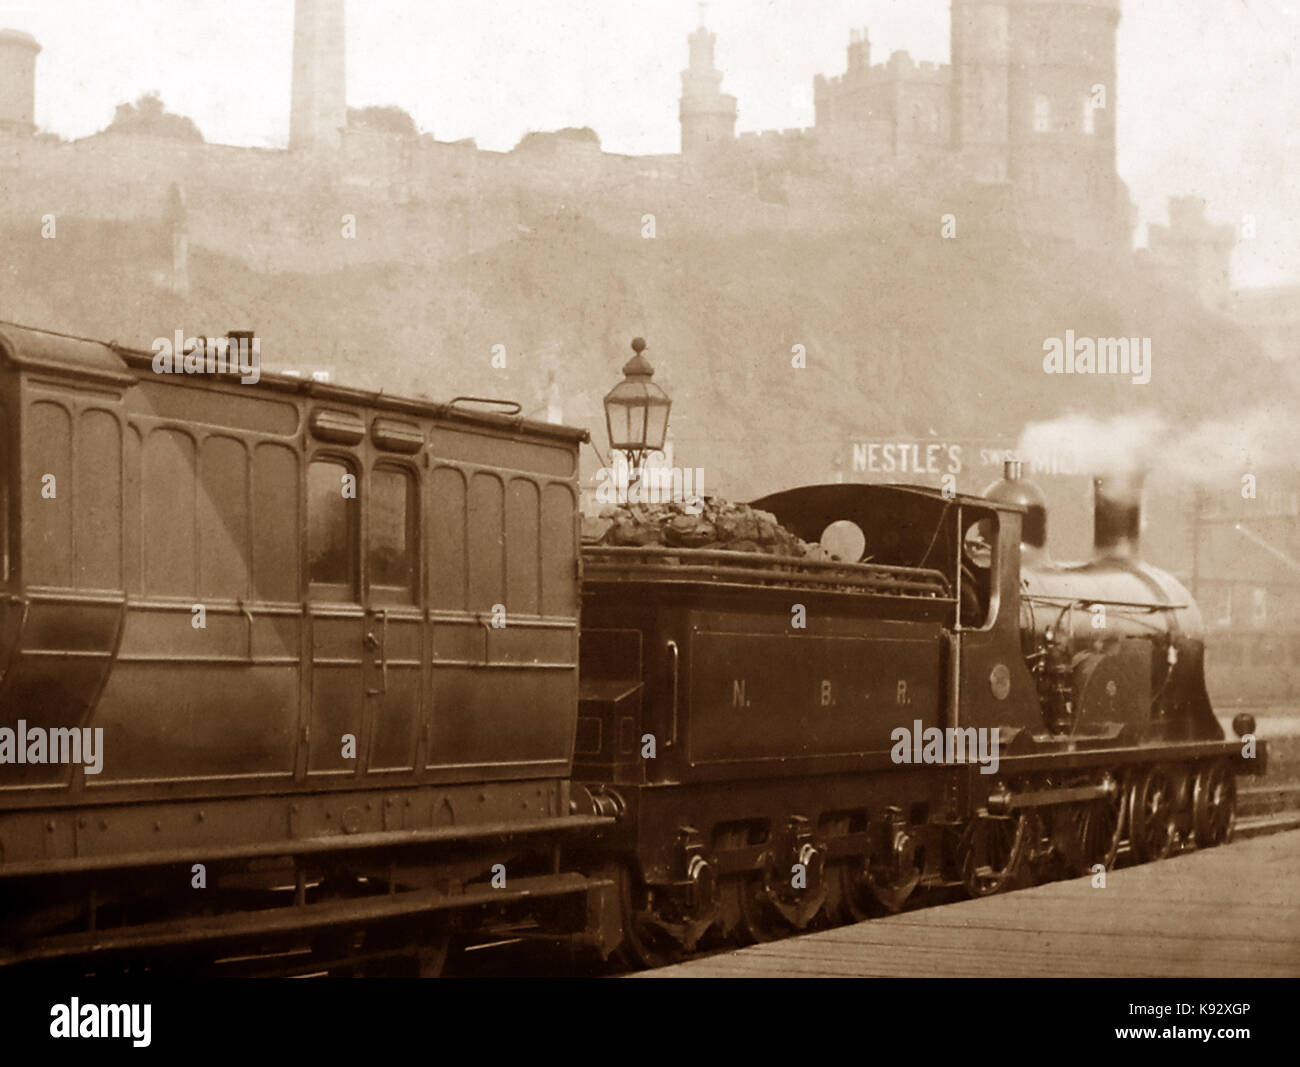 Un train de chemin de fer du nord de la période victorienne, à Édimbourg Banque D'Images